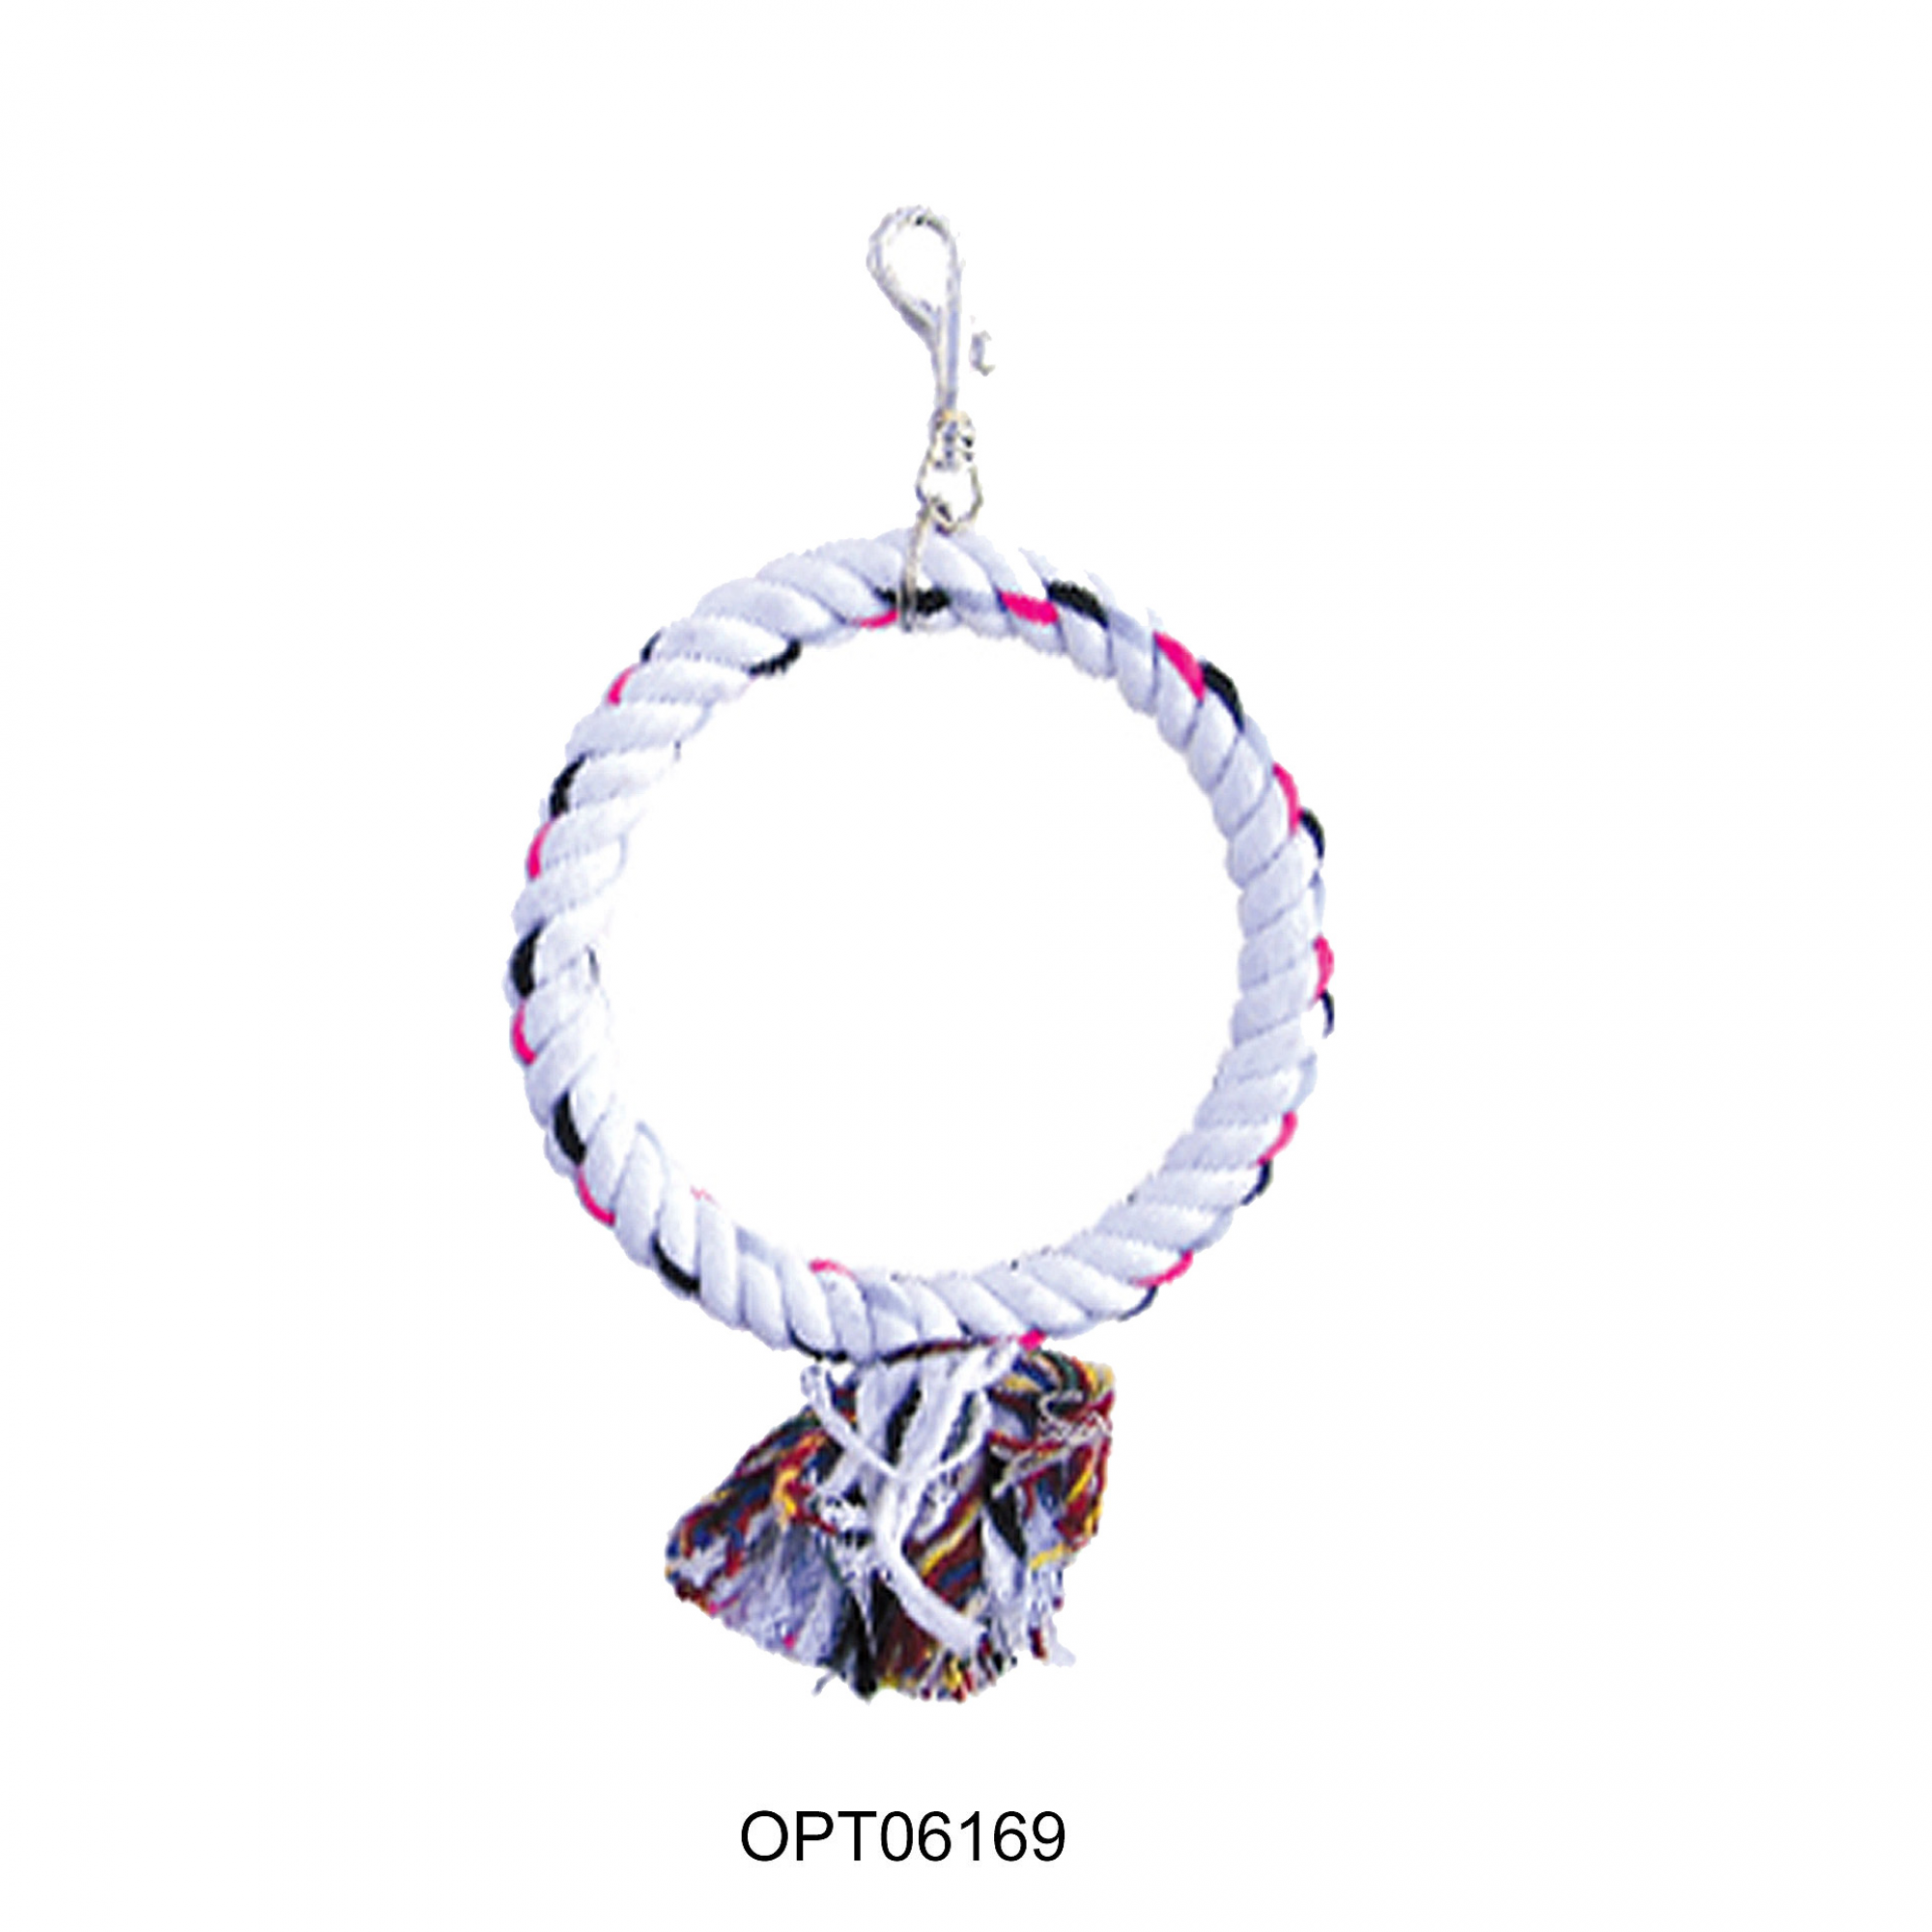 OPSP - 6169 - Round Rope Bird Toy 9